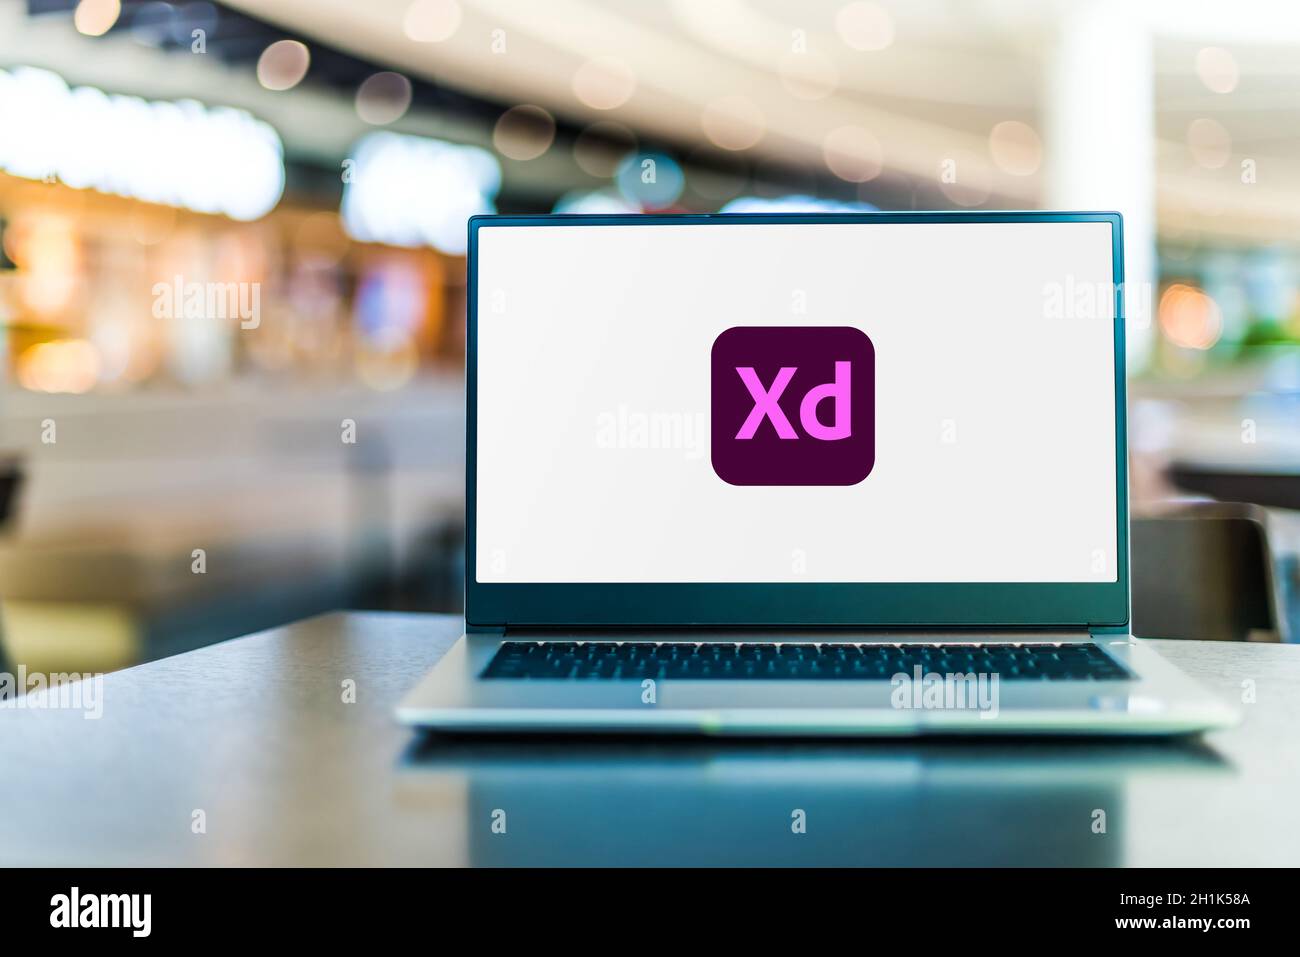 POZNAN, POL - SEP 23, 2020: Laptop-Computer mit Logo von Adobe XD, ein Vektor-basierte User Experience Design-Tool für Web-Apps und mobile Apps, deve Stockfoto